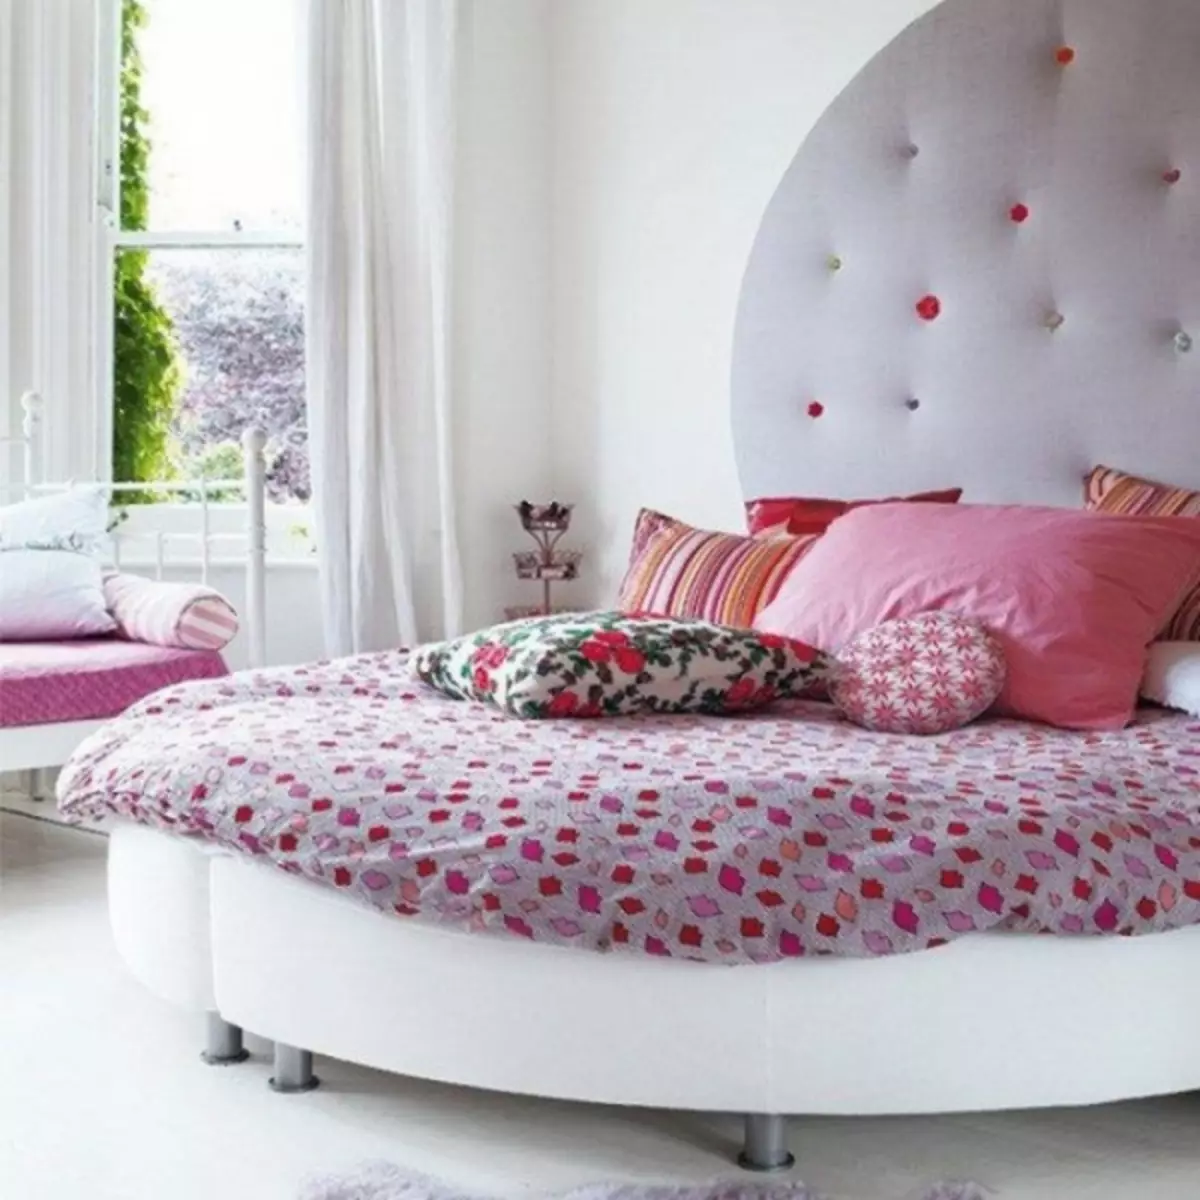 Круглая кровать для девочки 14 лет